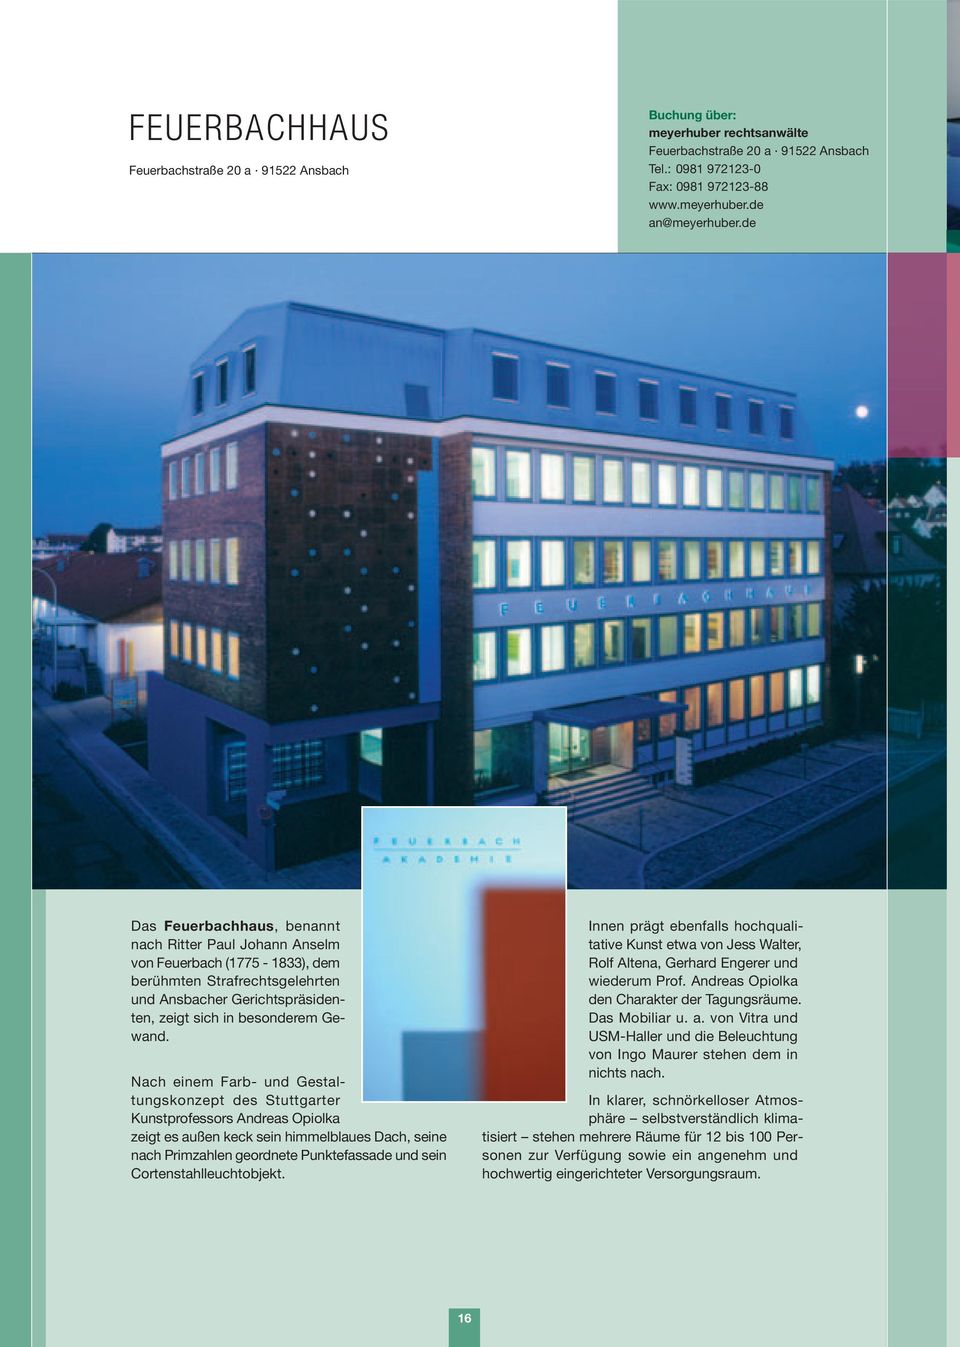 Nach einem Farb- und Gestaltungskonzept des Stuttgarter Kunstprofessors Andreas Opiolka zeigt es außen keck sein himmelblaues Dach, seine nach rimzahlen geordnete unktefassade und sein